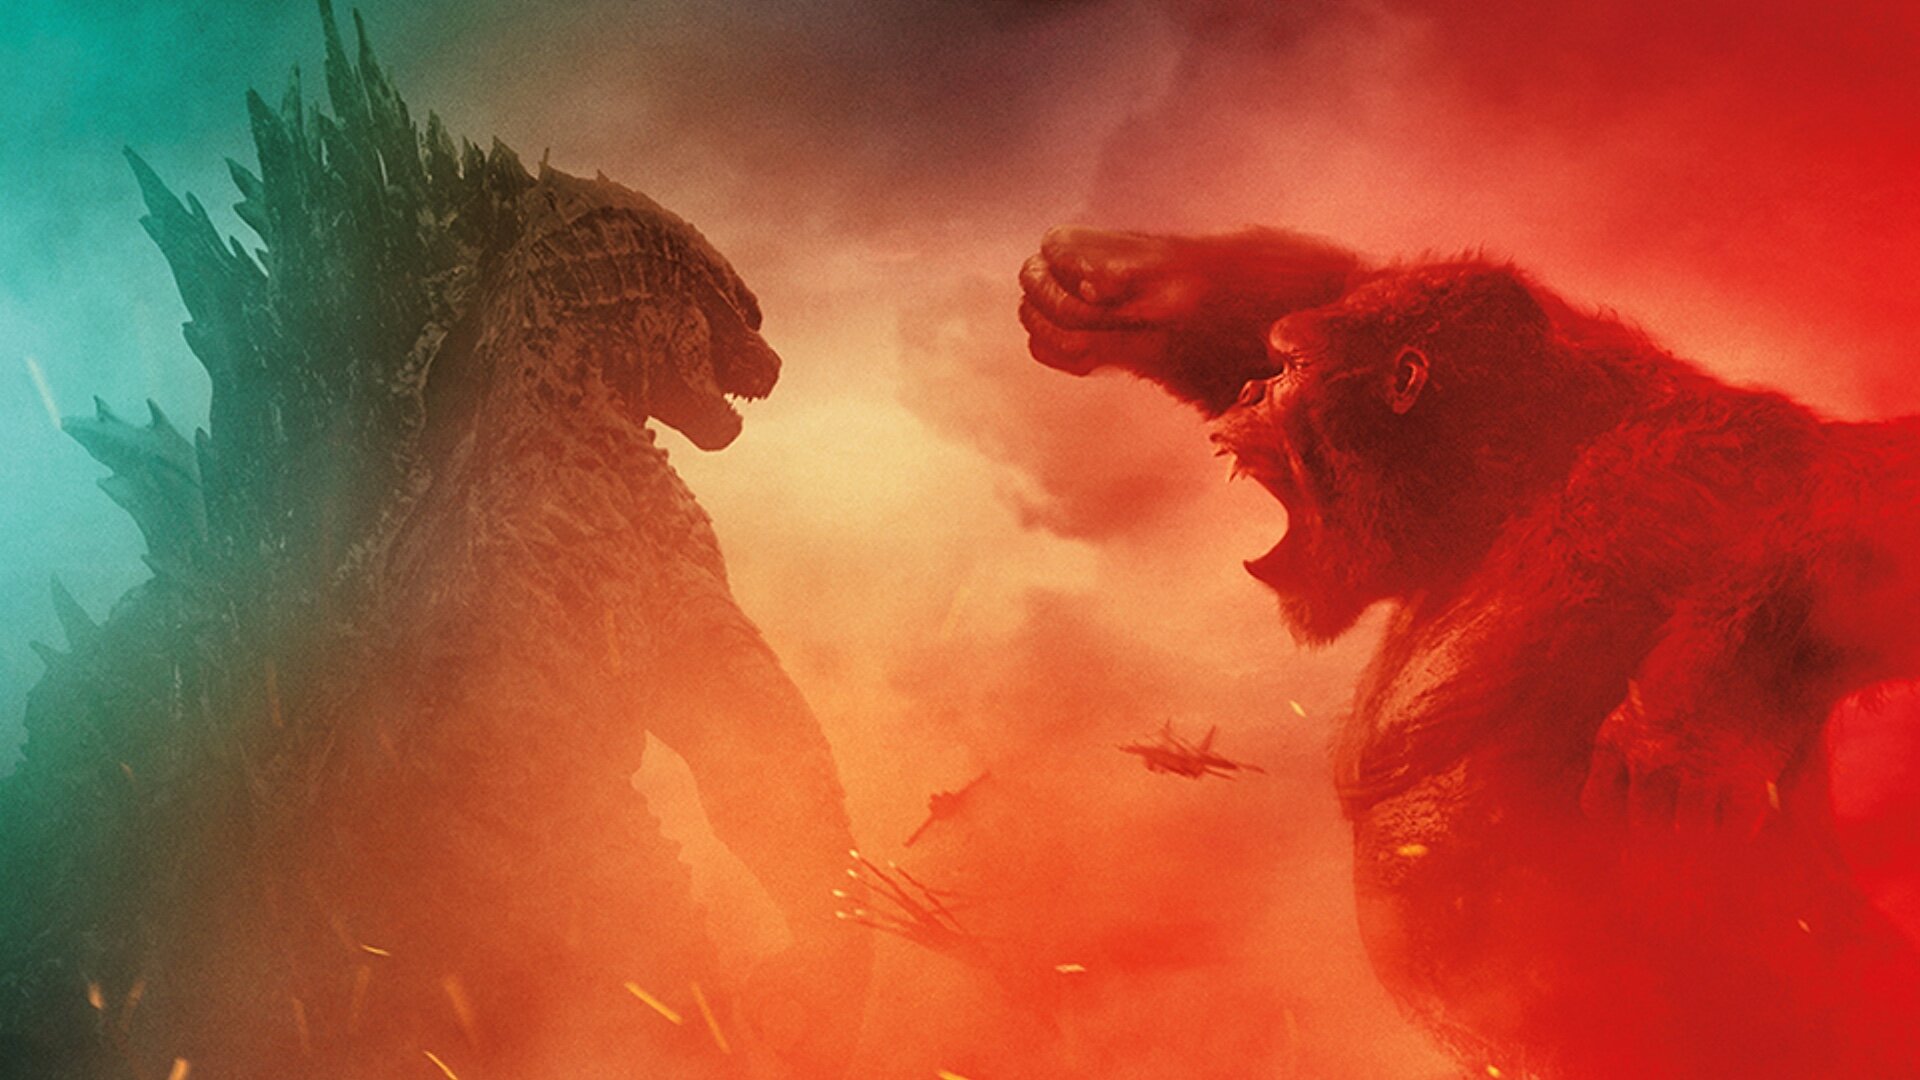 Godzilla vs. Kong 